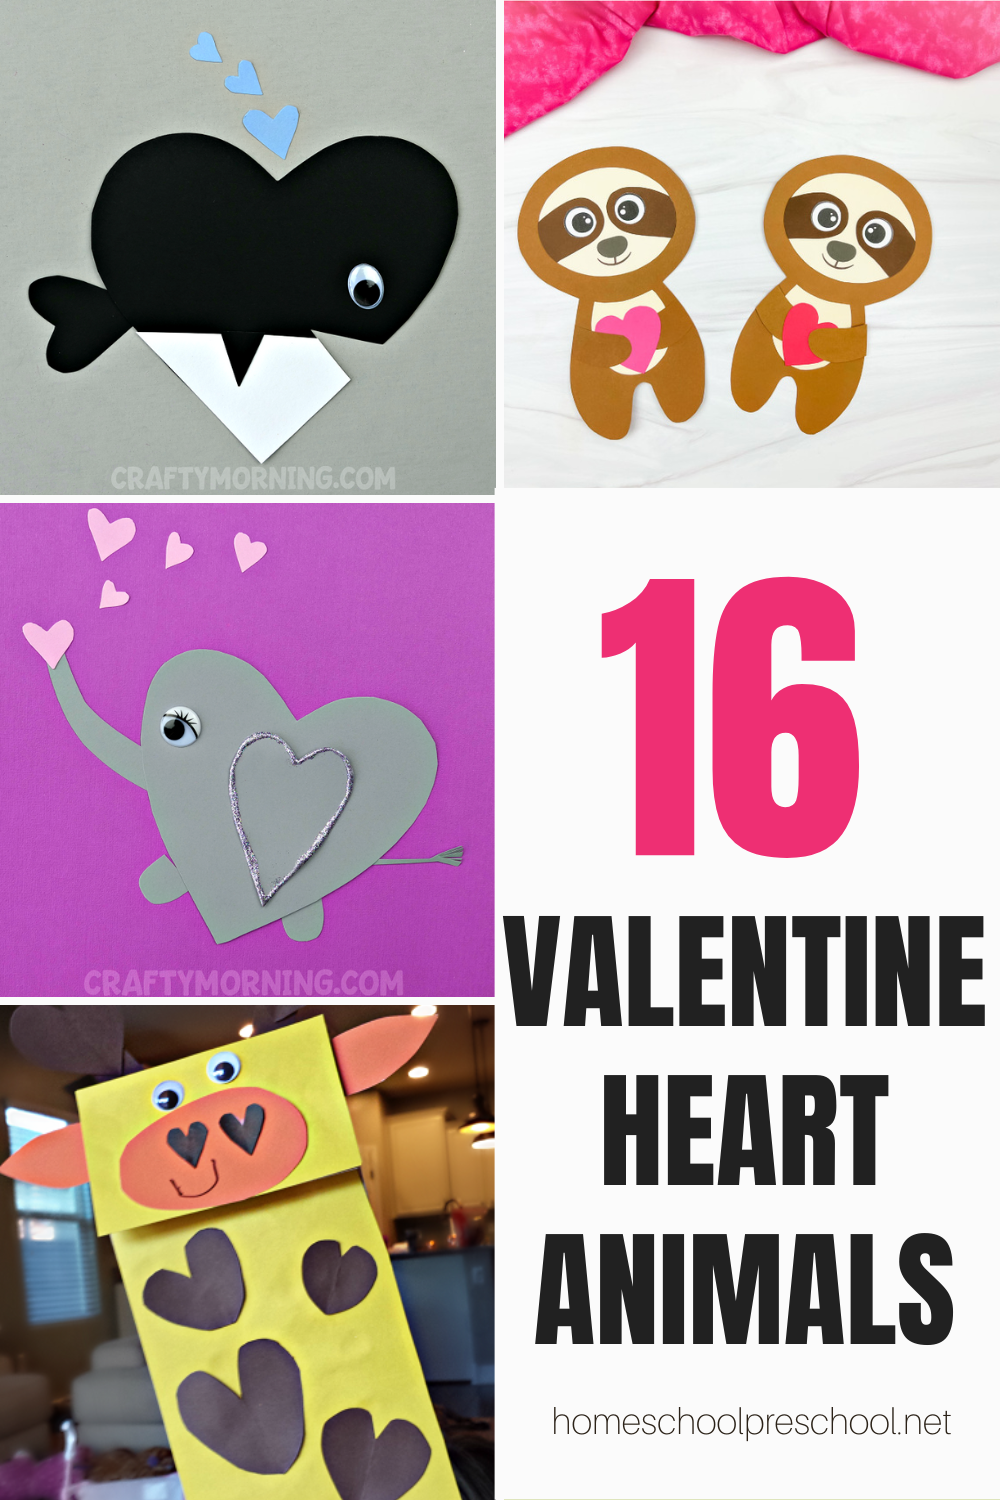 valentine-crafts-for-preschoolers Valentine Heart Animals